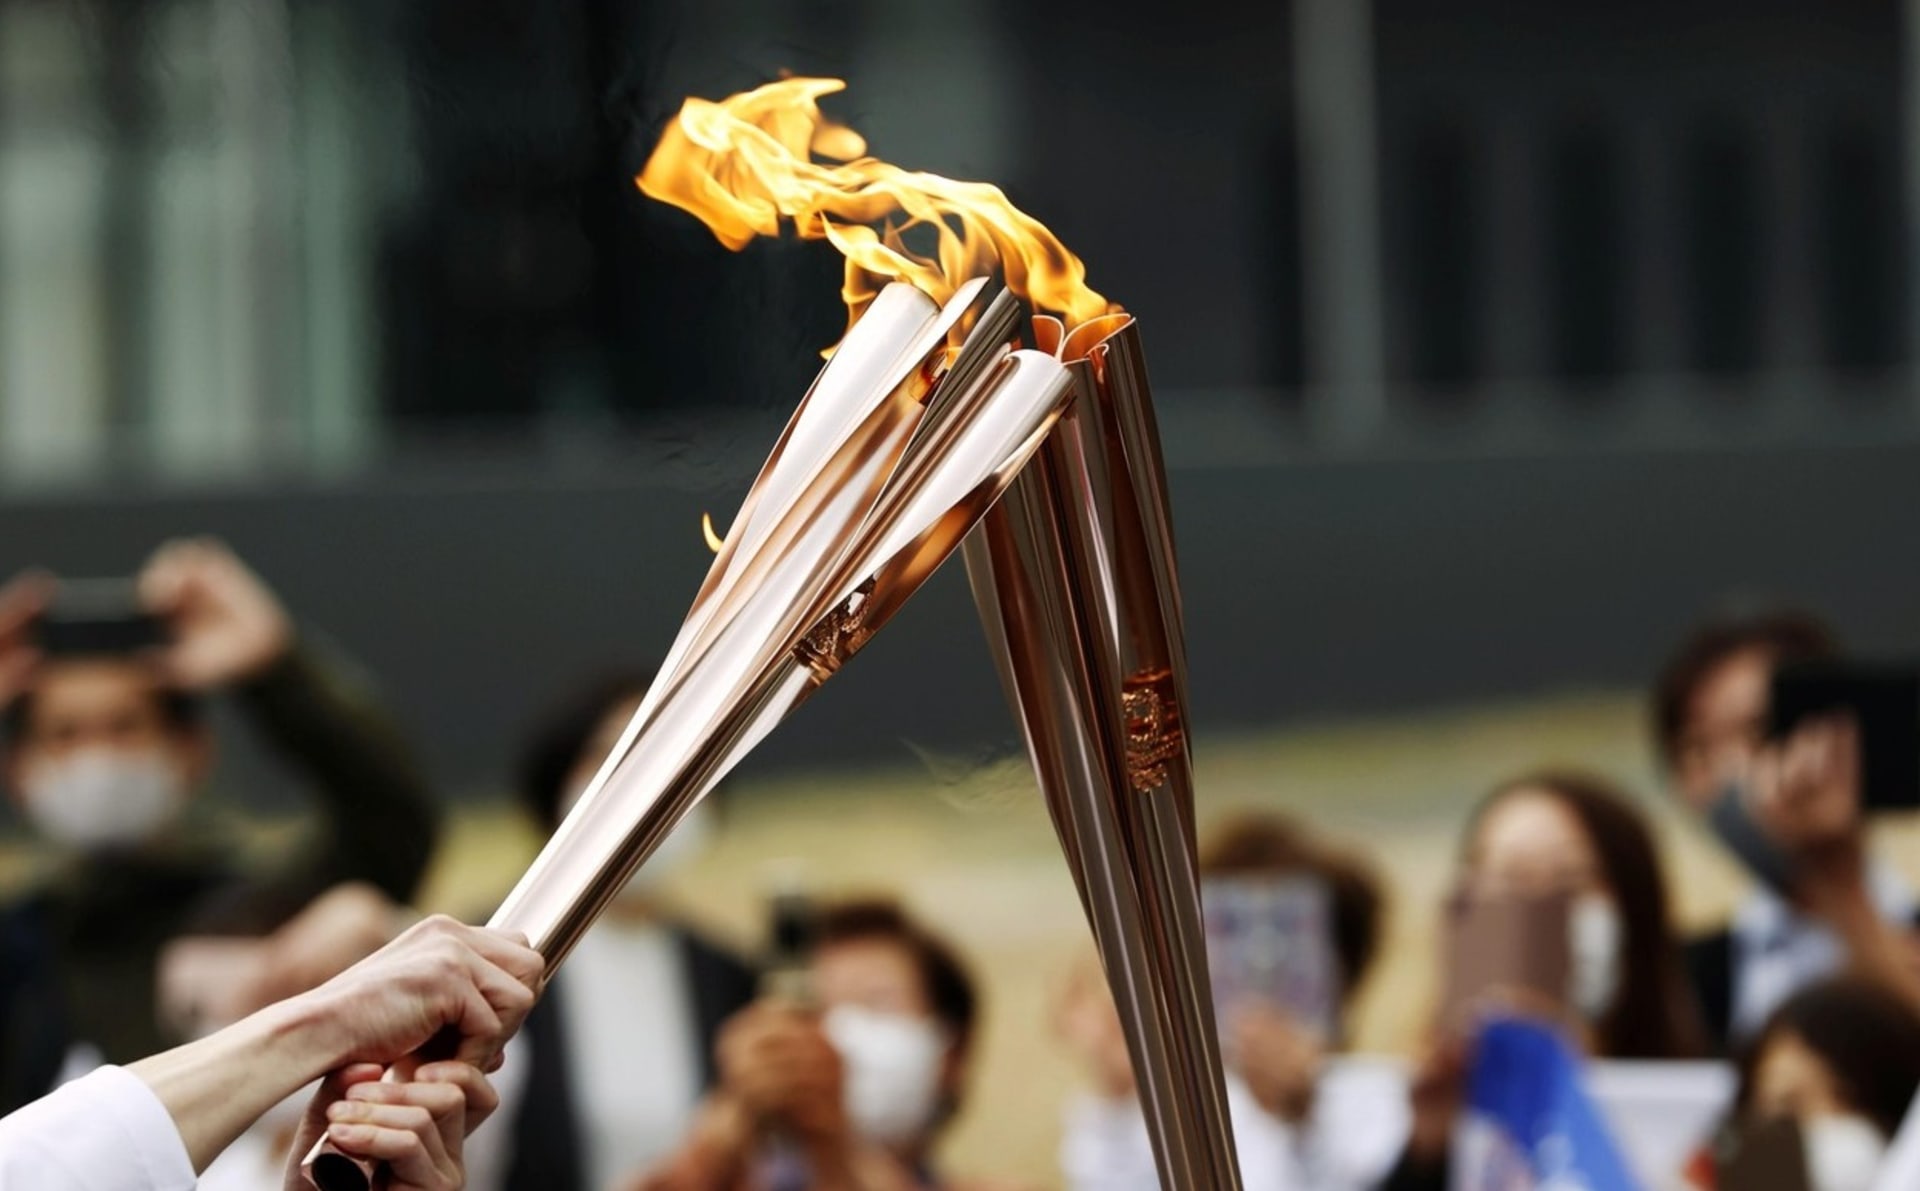 Ještě než nad Tokiem vzplane olympijský oheň, je jasné, že hry nebudou spravedlivé.